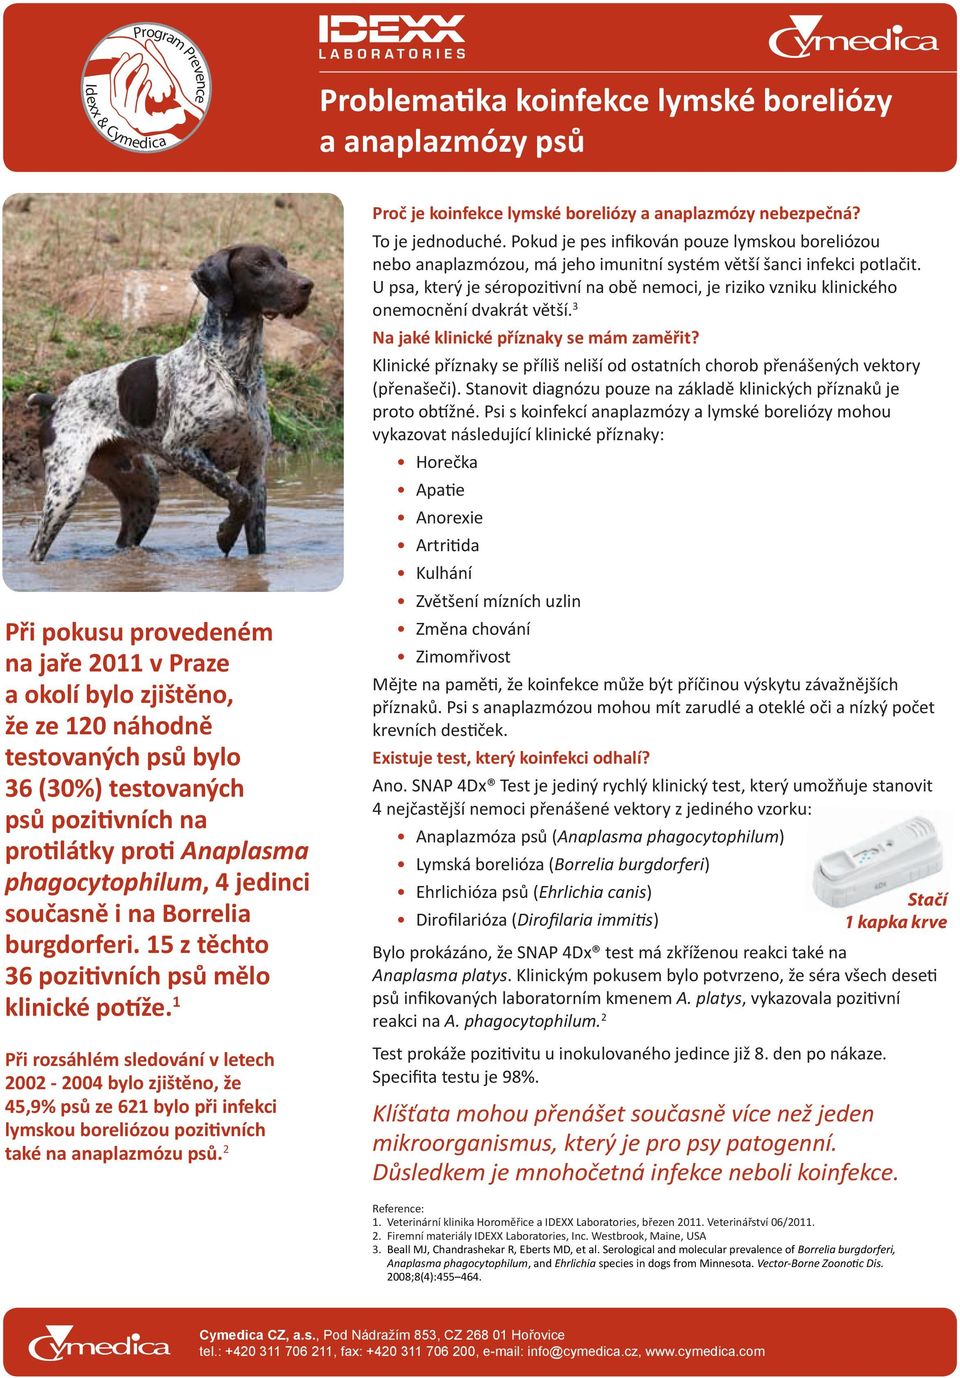 1 Při rozsáhlém sledování v letech 2002-2004 bylo zjištěno, že 45,9% psů ze 621 bylo při infekci lymskou boreliózou pozitivních také na anaplazmózu psů.